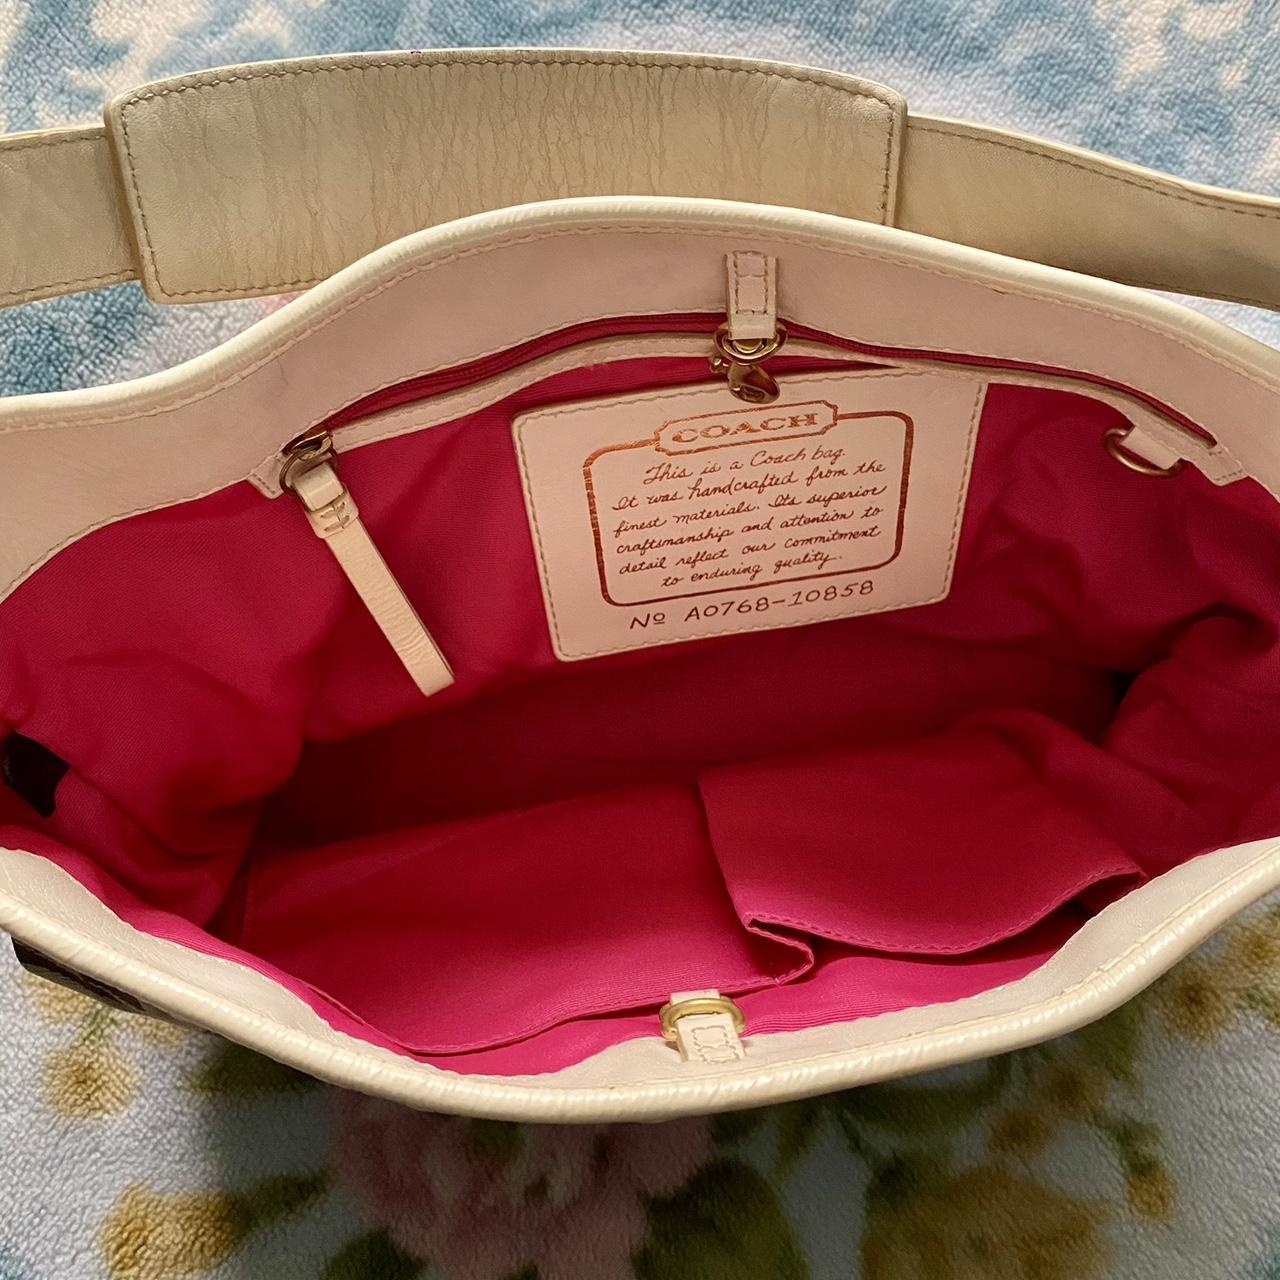 Vintage coach bag 🤎 With classic coach monogram - Depop